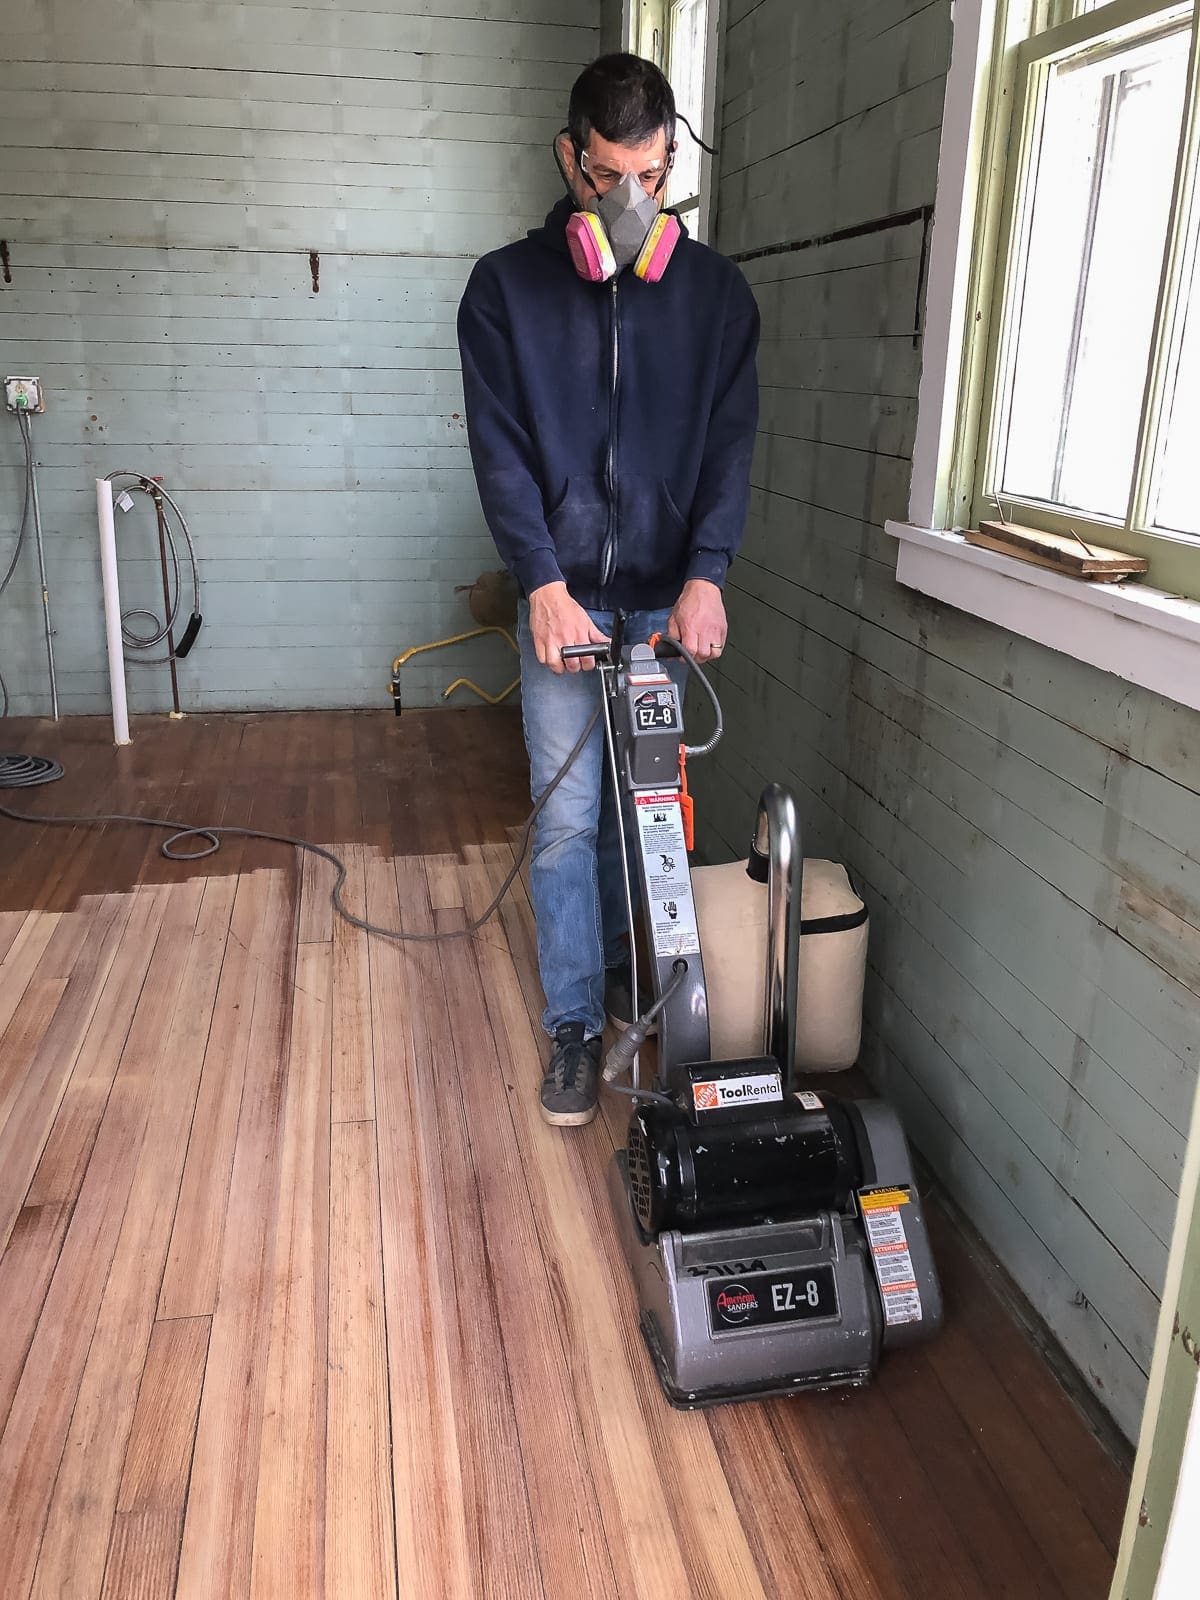 Sanding Hardwood Floors Blake Hill, Refinishing Hardwood Floors With Hand Sander